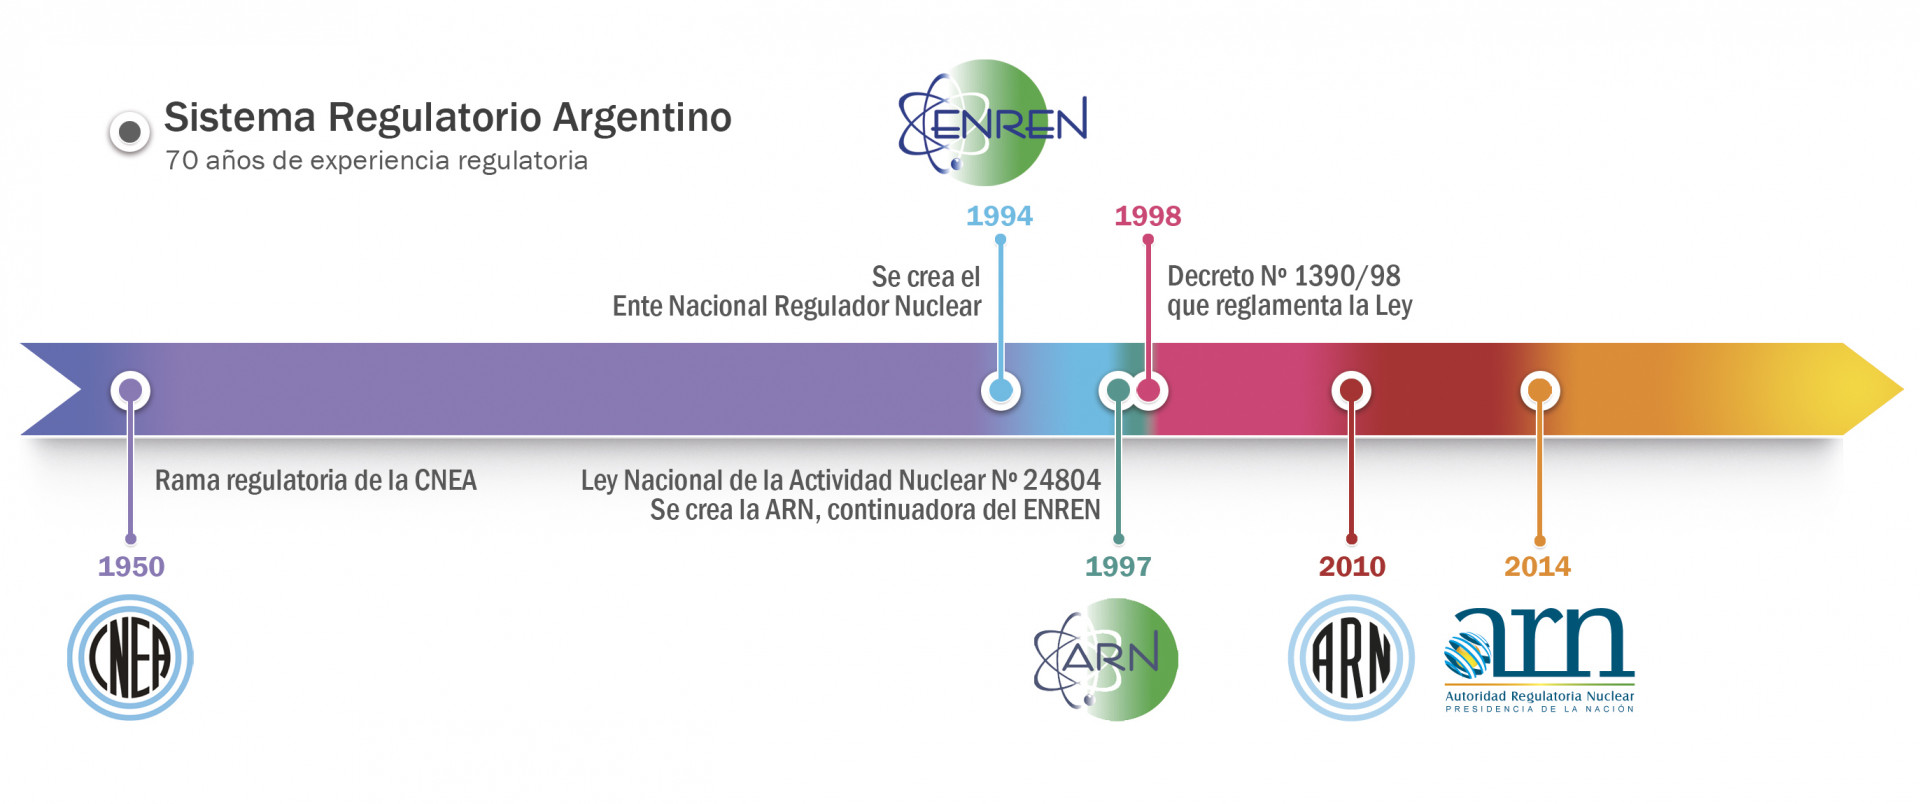 Sistema Regulatorio Argentino - línea de tiempo